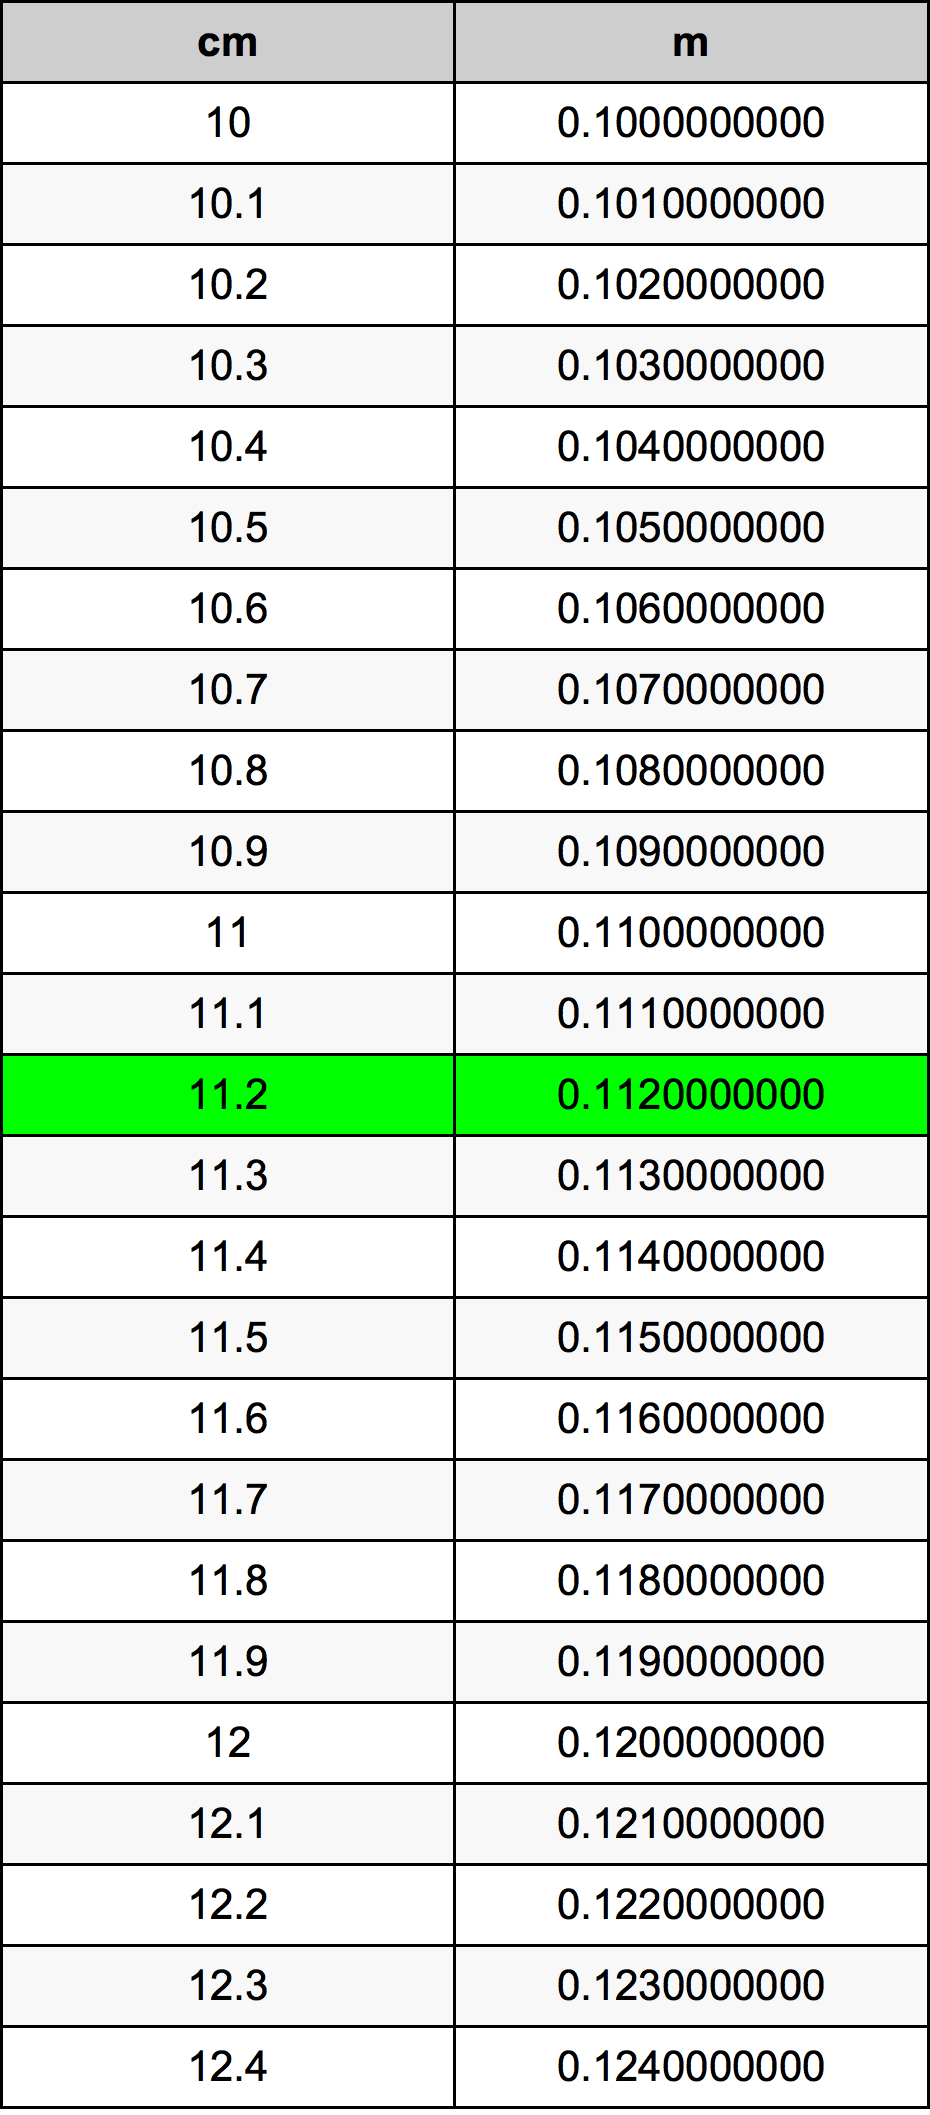 11.2 Centiméter átszámítási táblázat